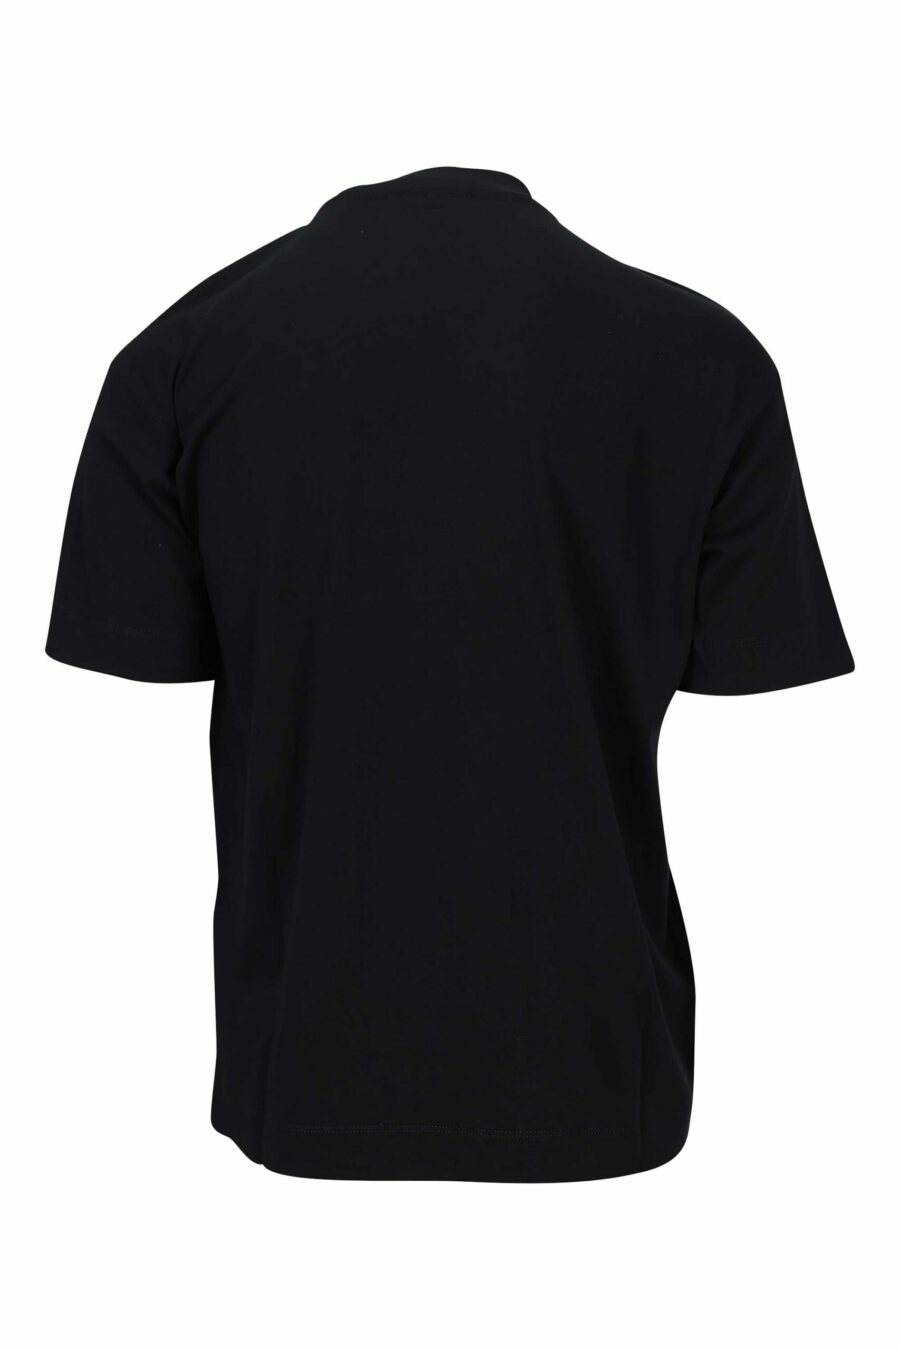 Black T-shirt with monochrome eagle maxilogo - 8057970432920 1 scaled